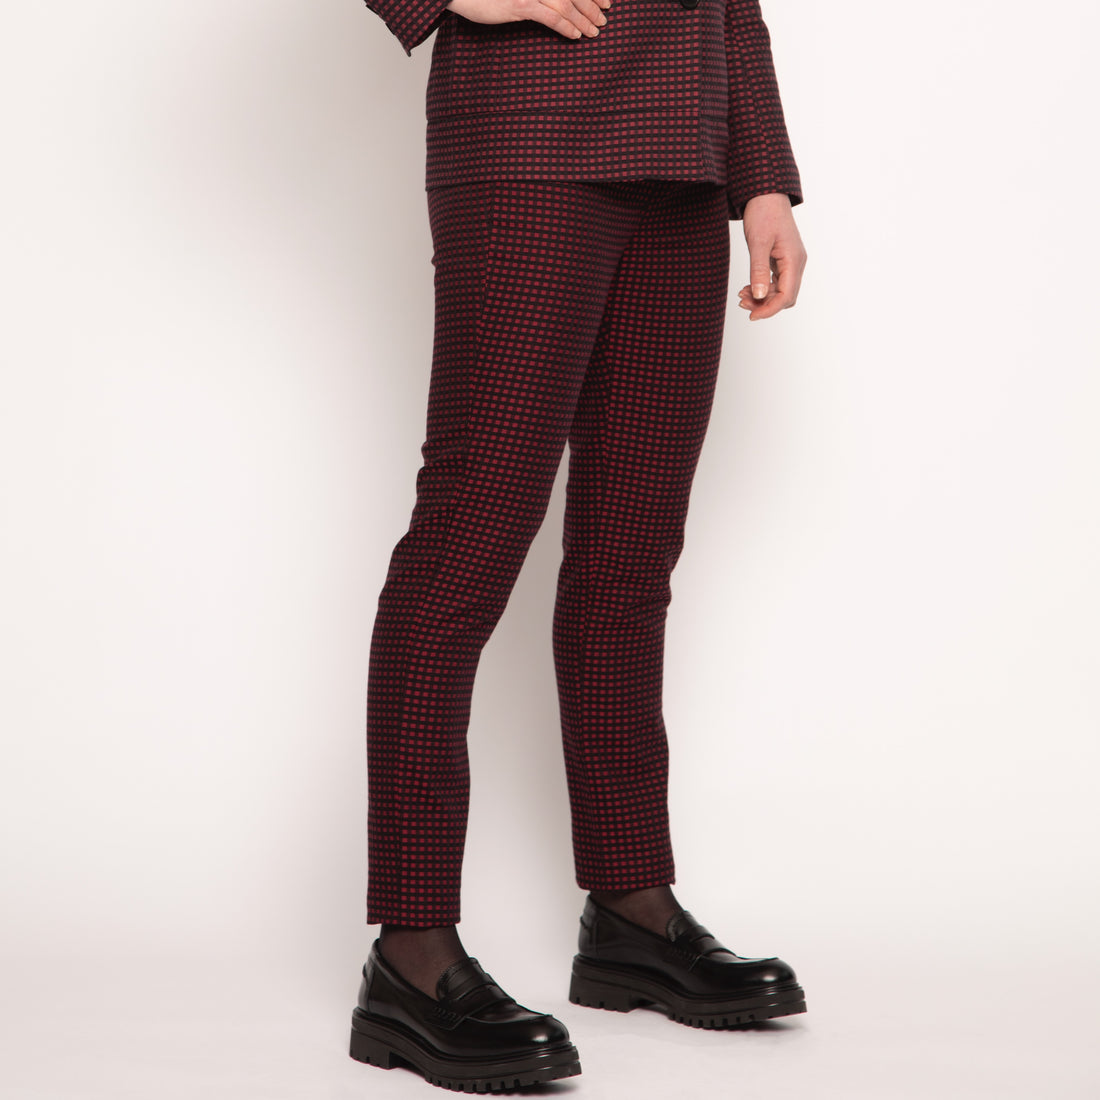 Pantalon tailleur slim - Coton - Vichy rouges et noirs - NUYHENN